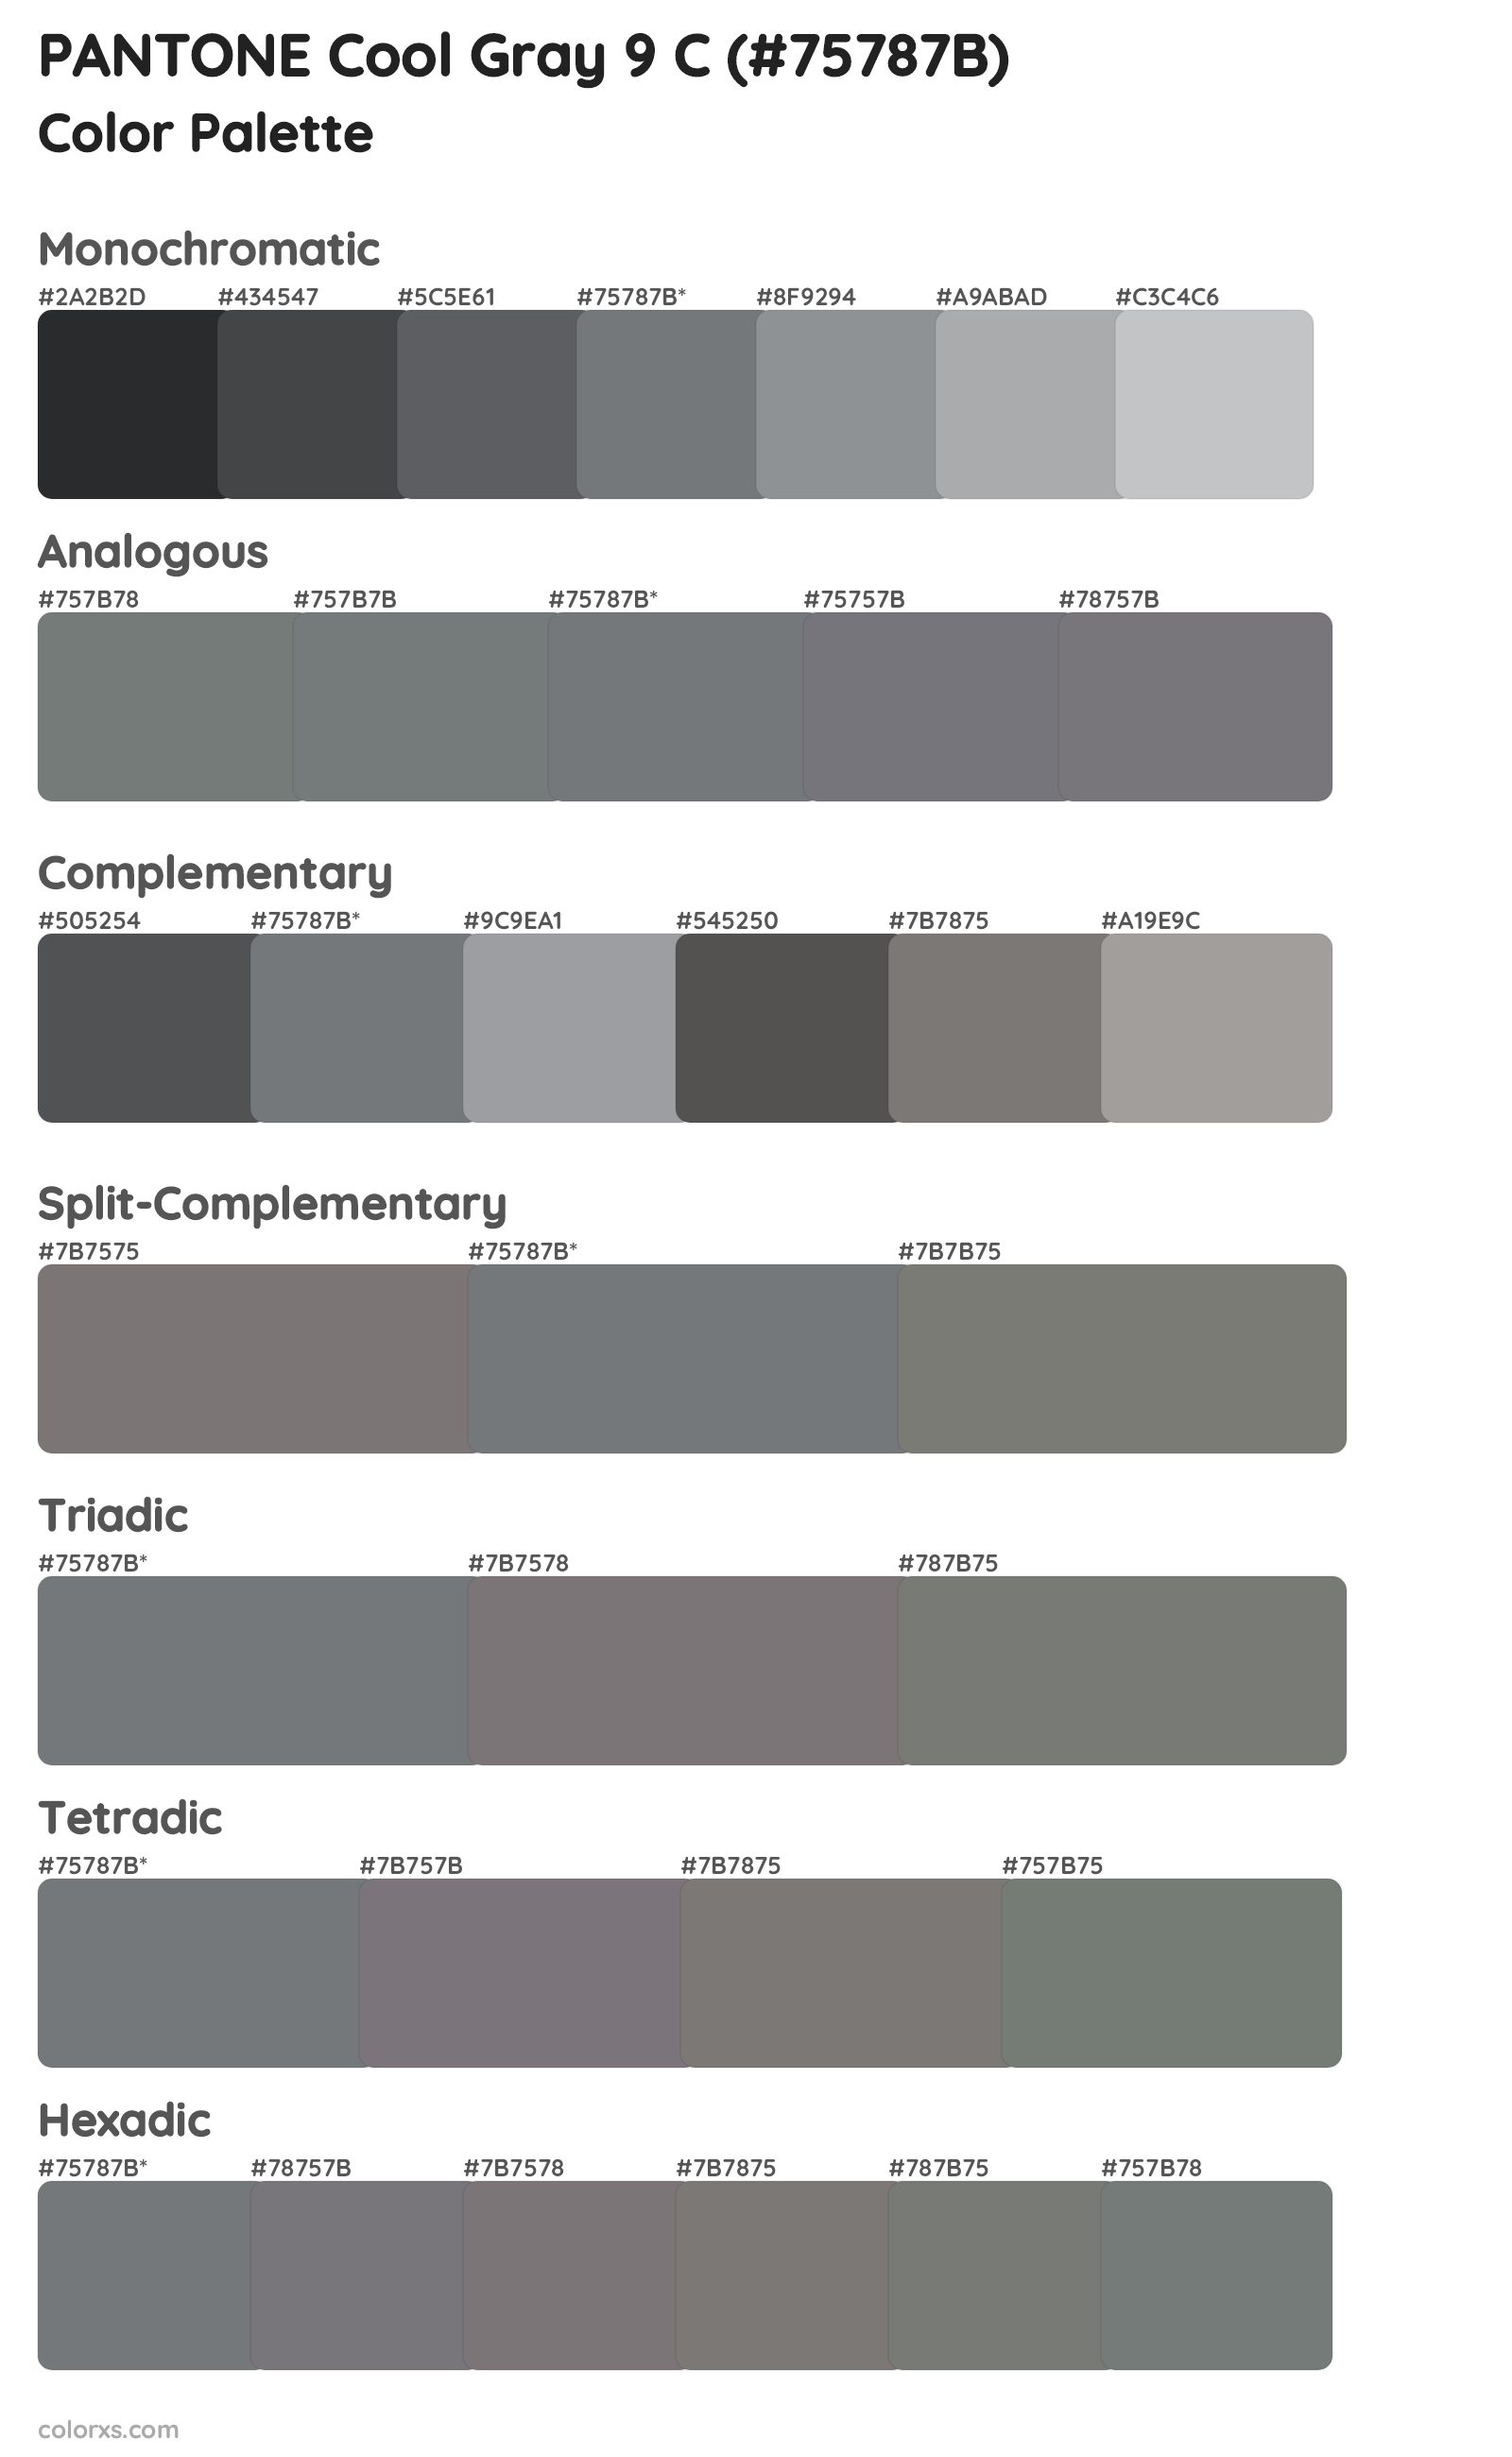 PANTONE Cool Gray 9 C Color Scheme Palettes